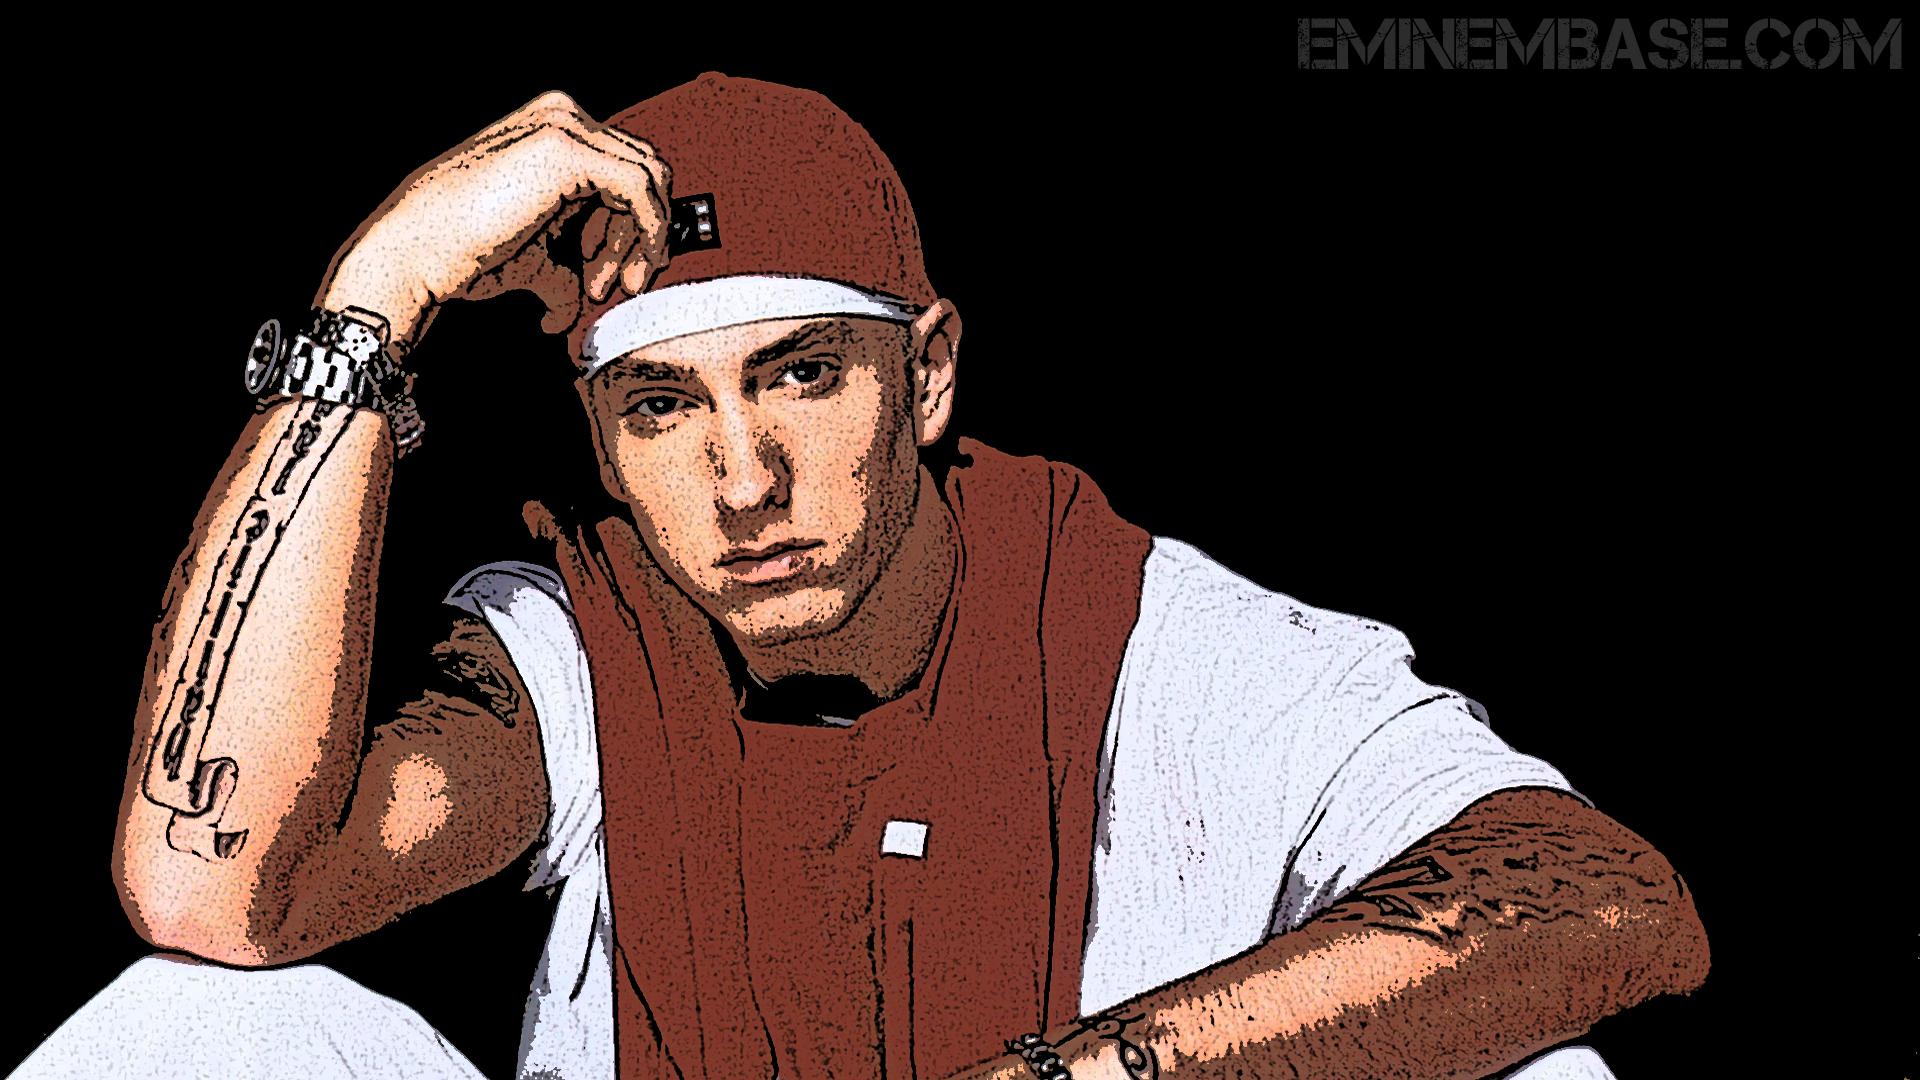 1920 x 1080 · jpeg - [76+] Eminem Wallpapers Hd on WallpaperSafari